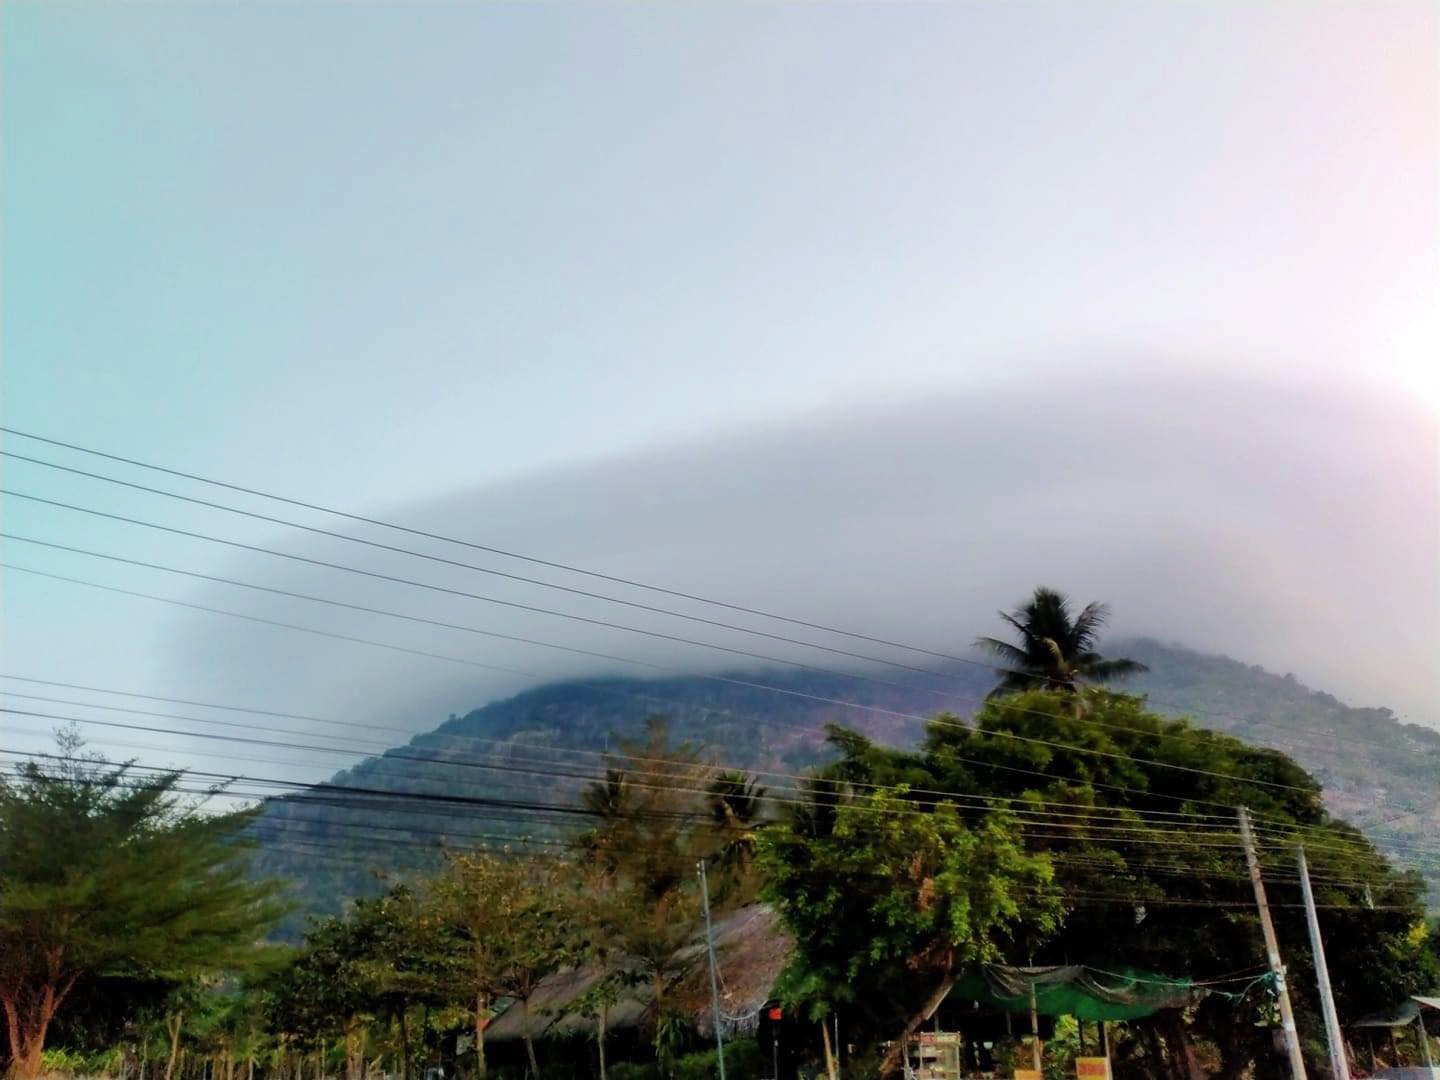 Đám mây trắng xóa dạng hình nón bao quanh đỉnh núi Bà Đen tạo nên một khung cảnh kỳ vĩ, đẹp mắt.